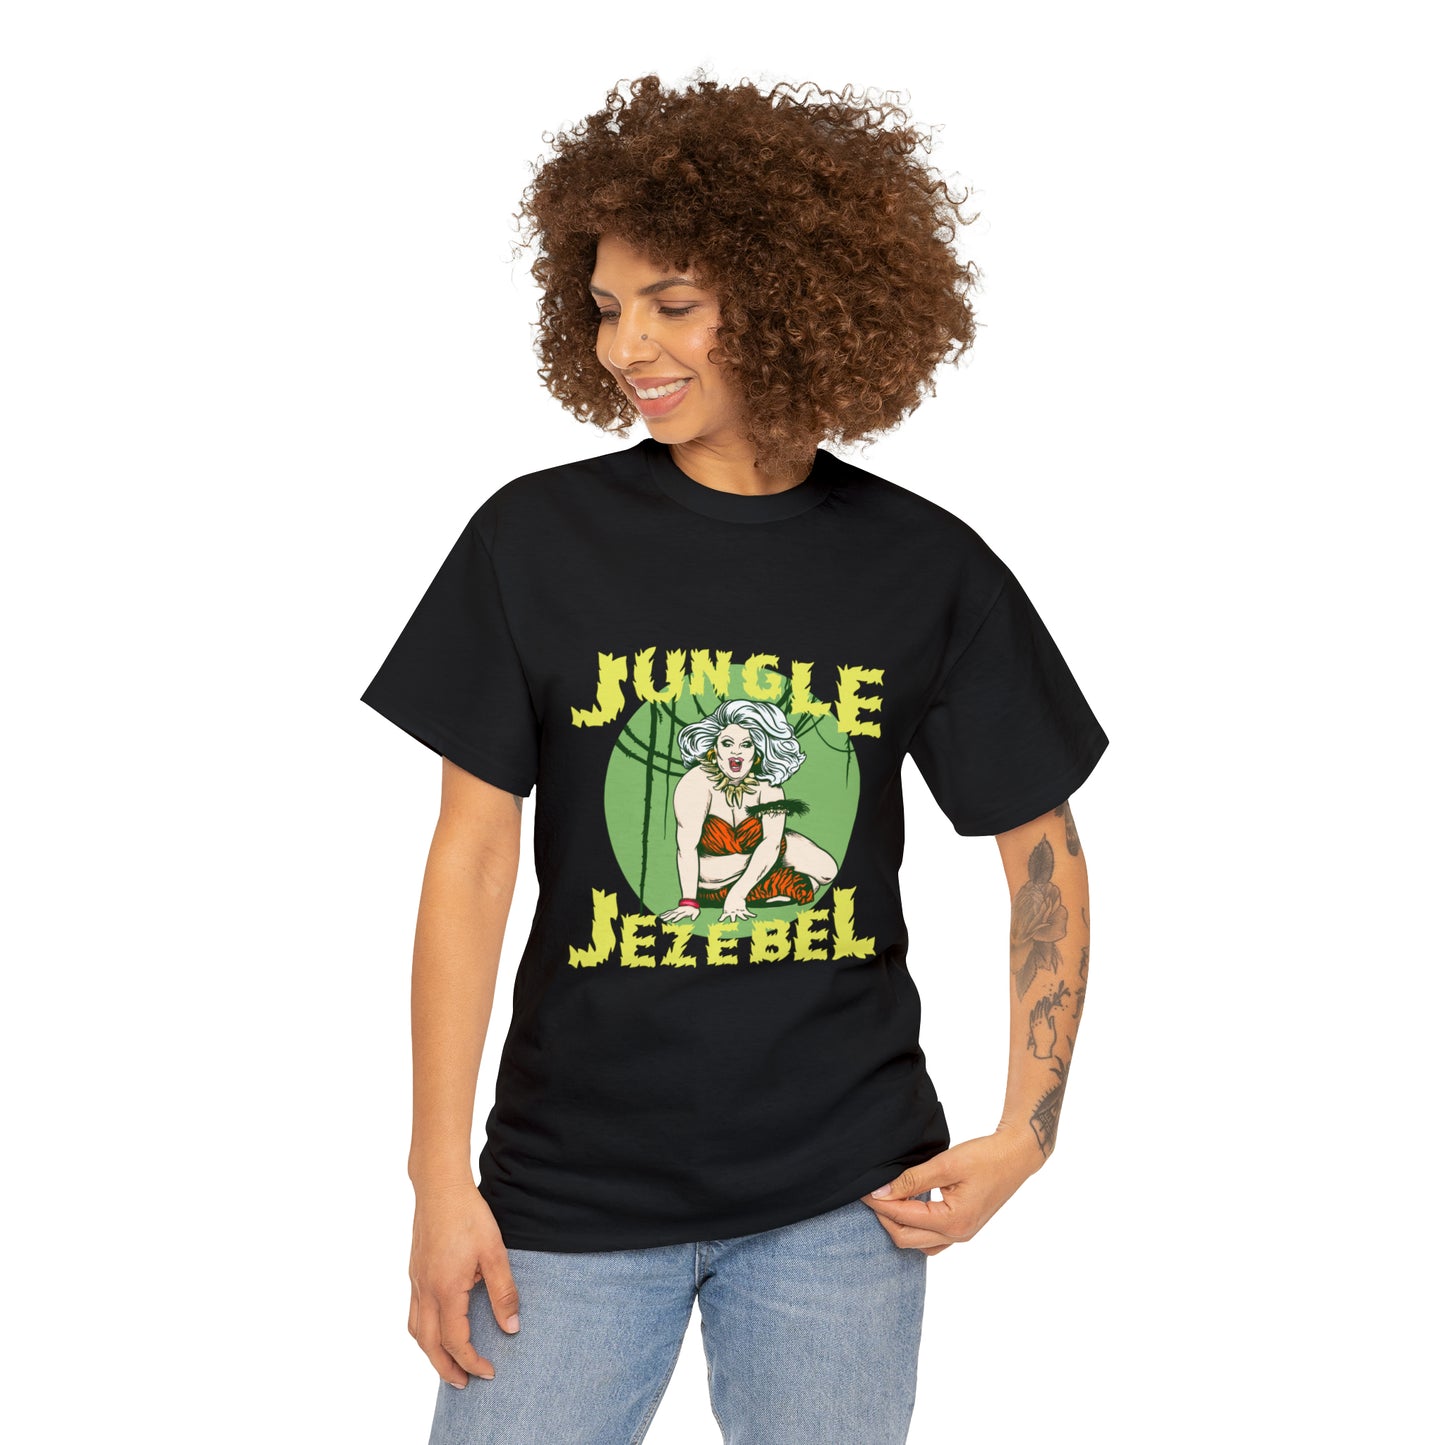 Jungle Jezebel